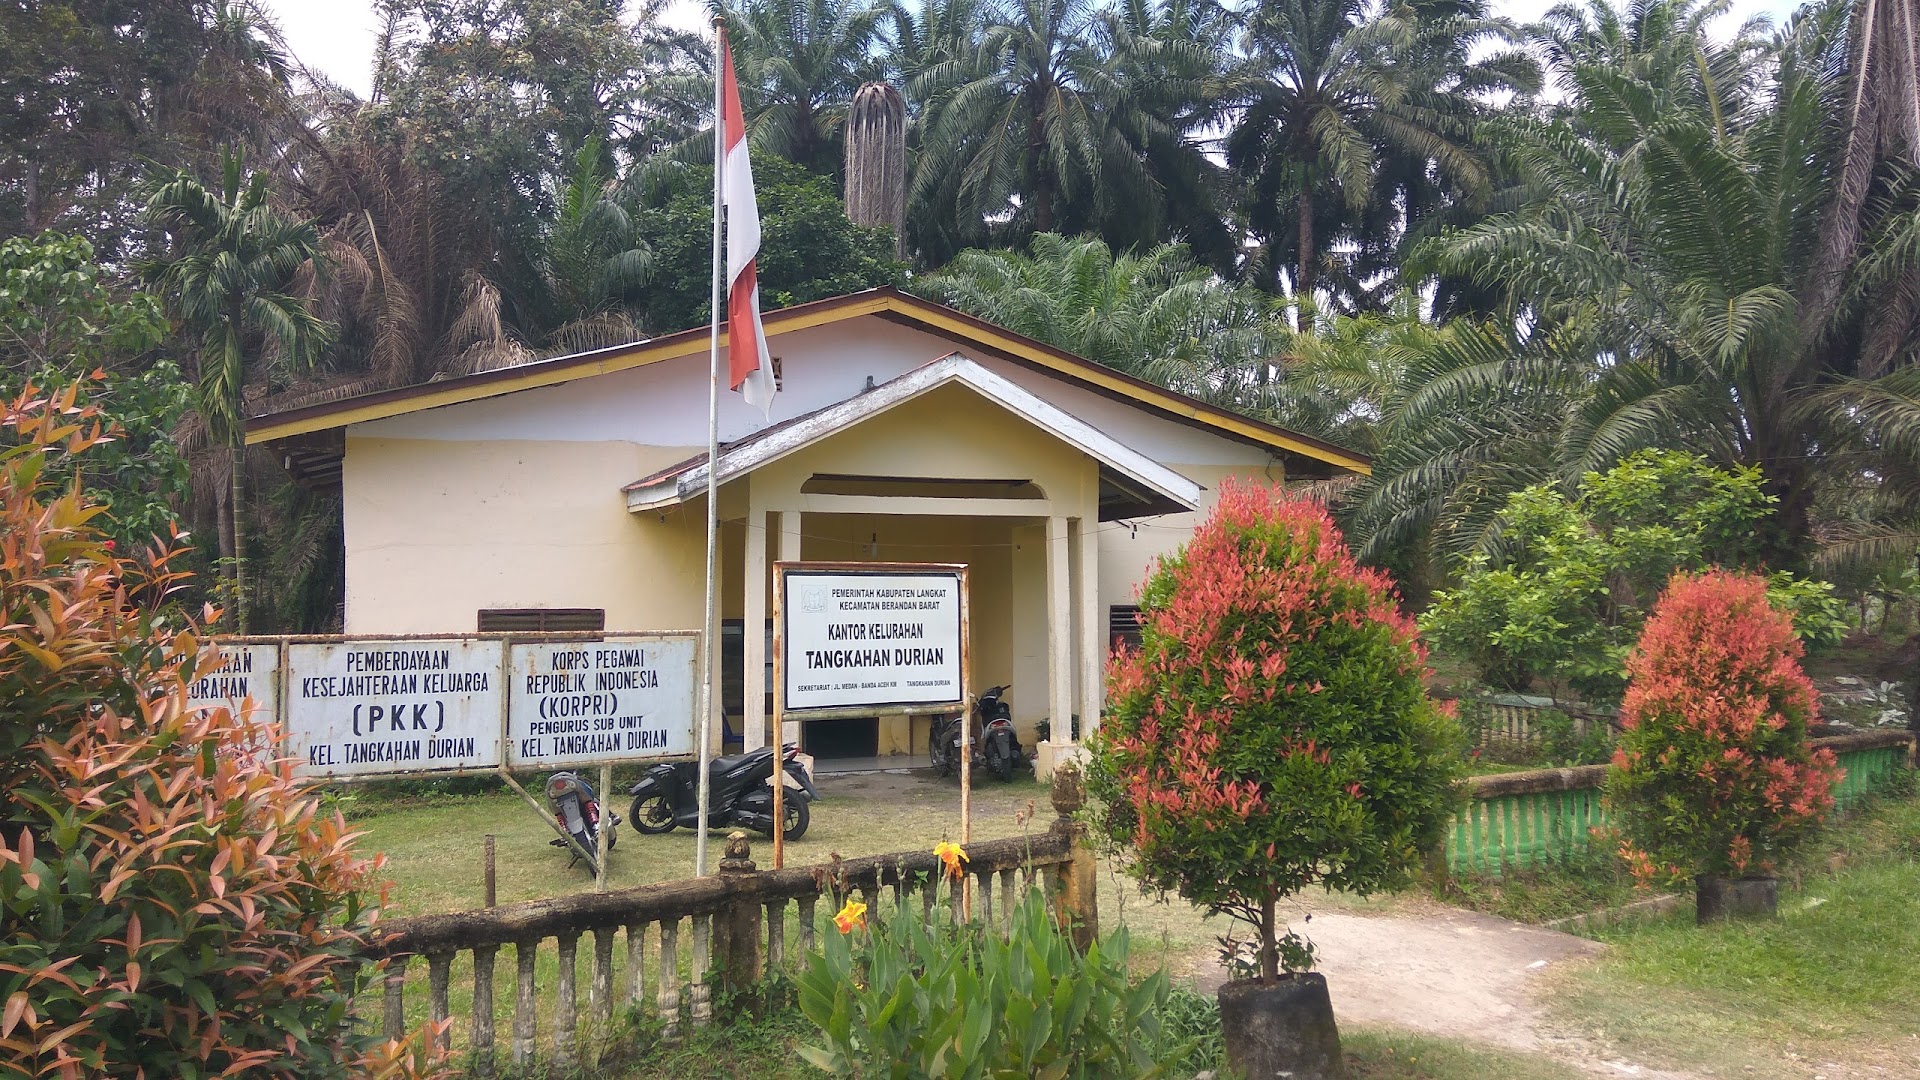 Kantor Kelurahan Tangkahan Durian Photo